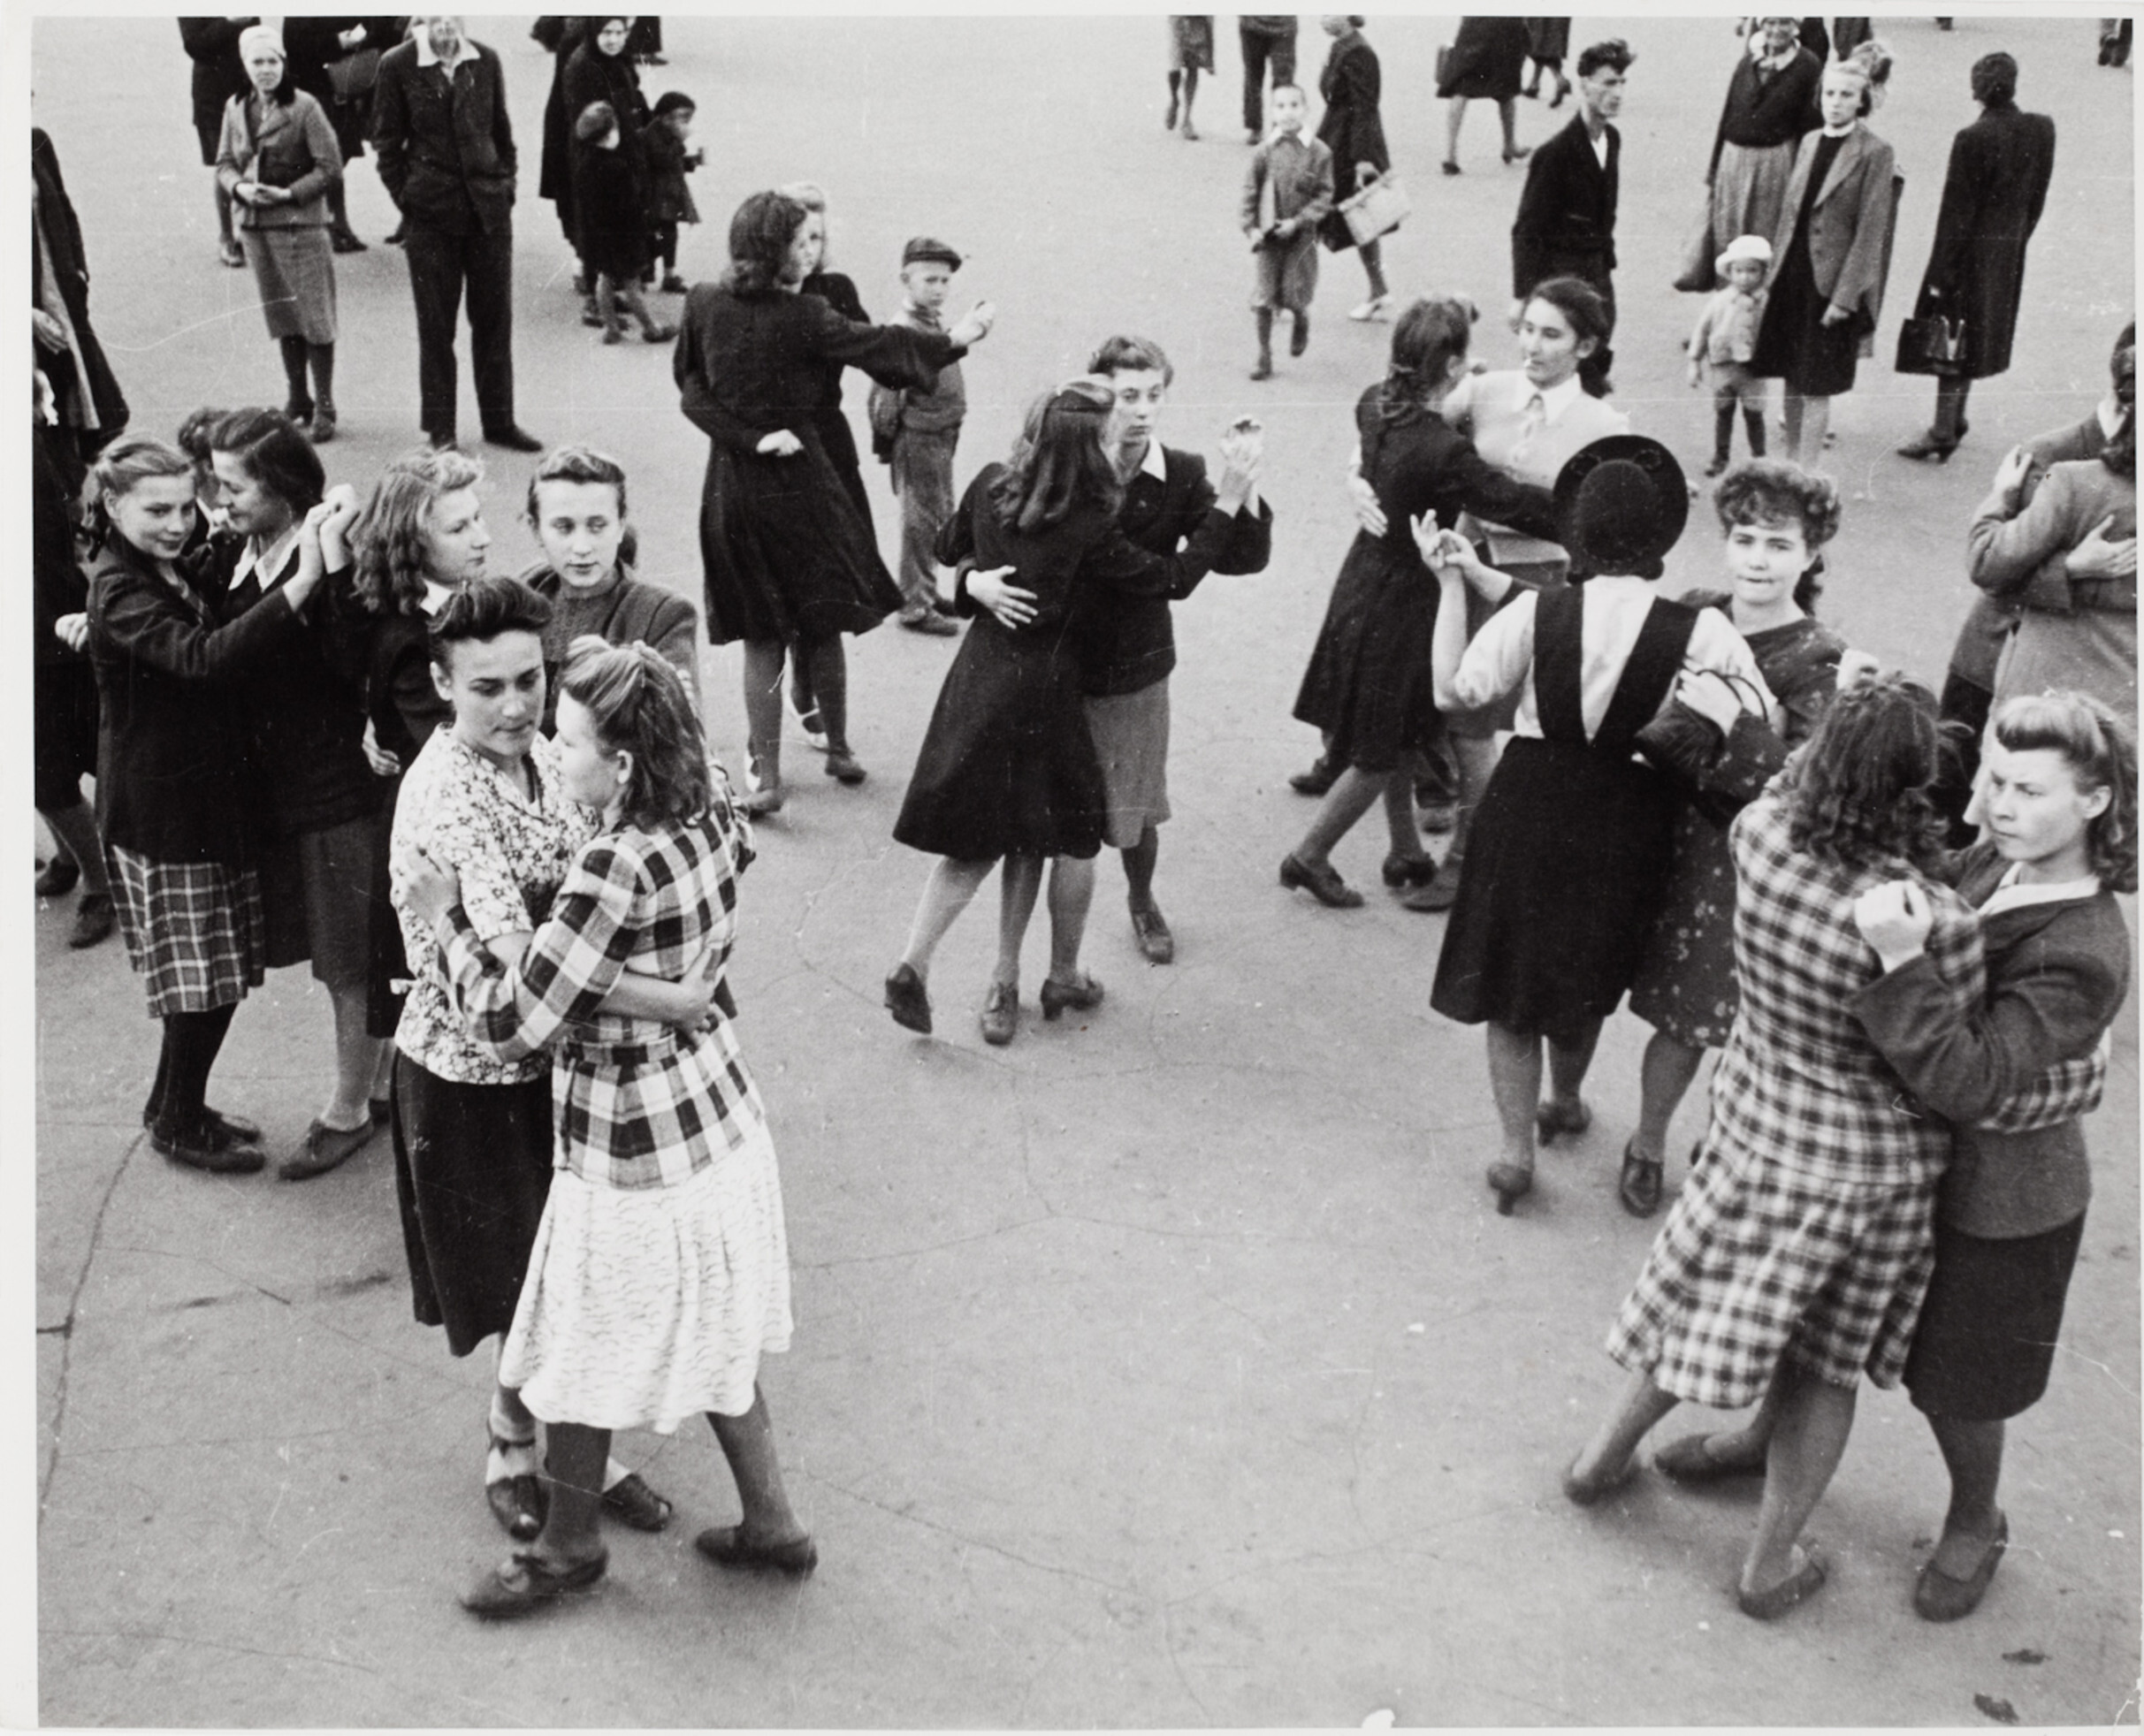 Пары танцуют на улице во время празднования годовщины Москвы, Москва, 1947 год. Фотограф Роберт Капа